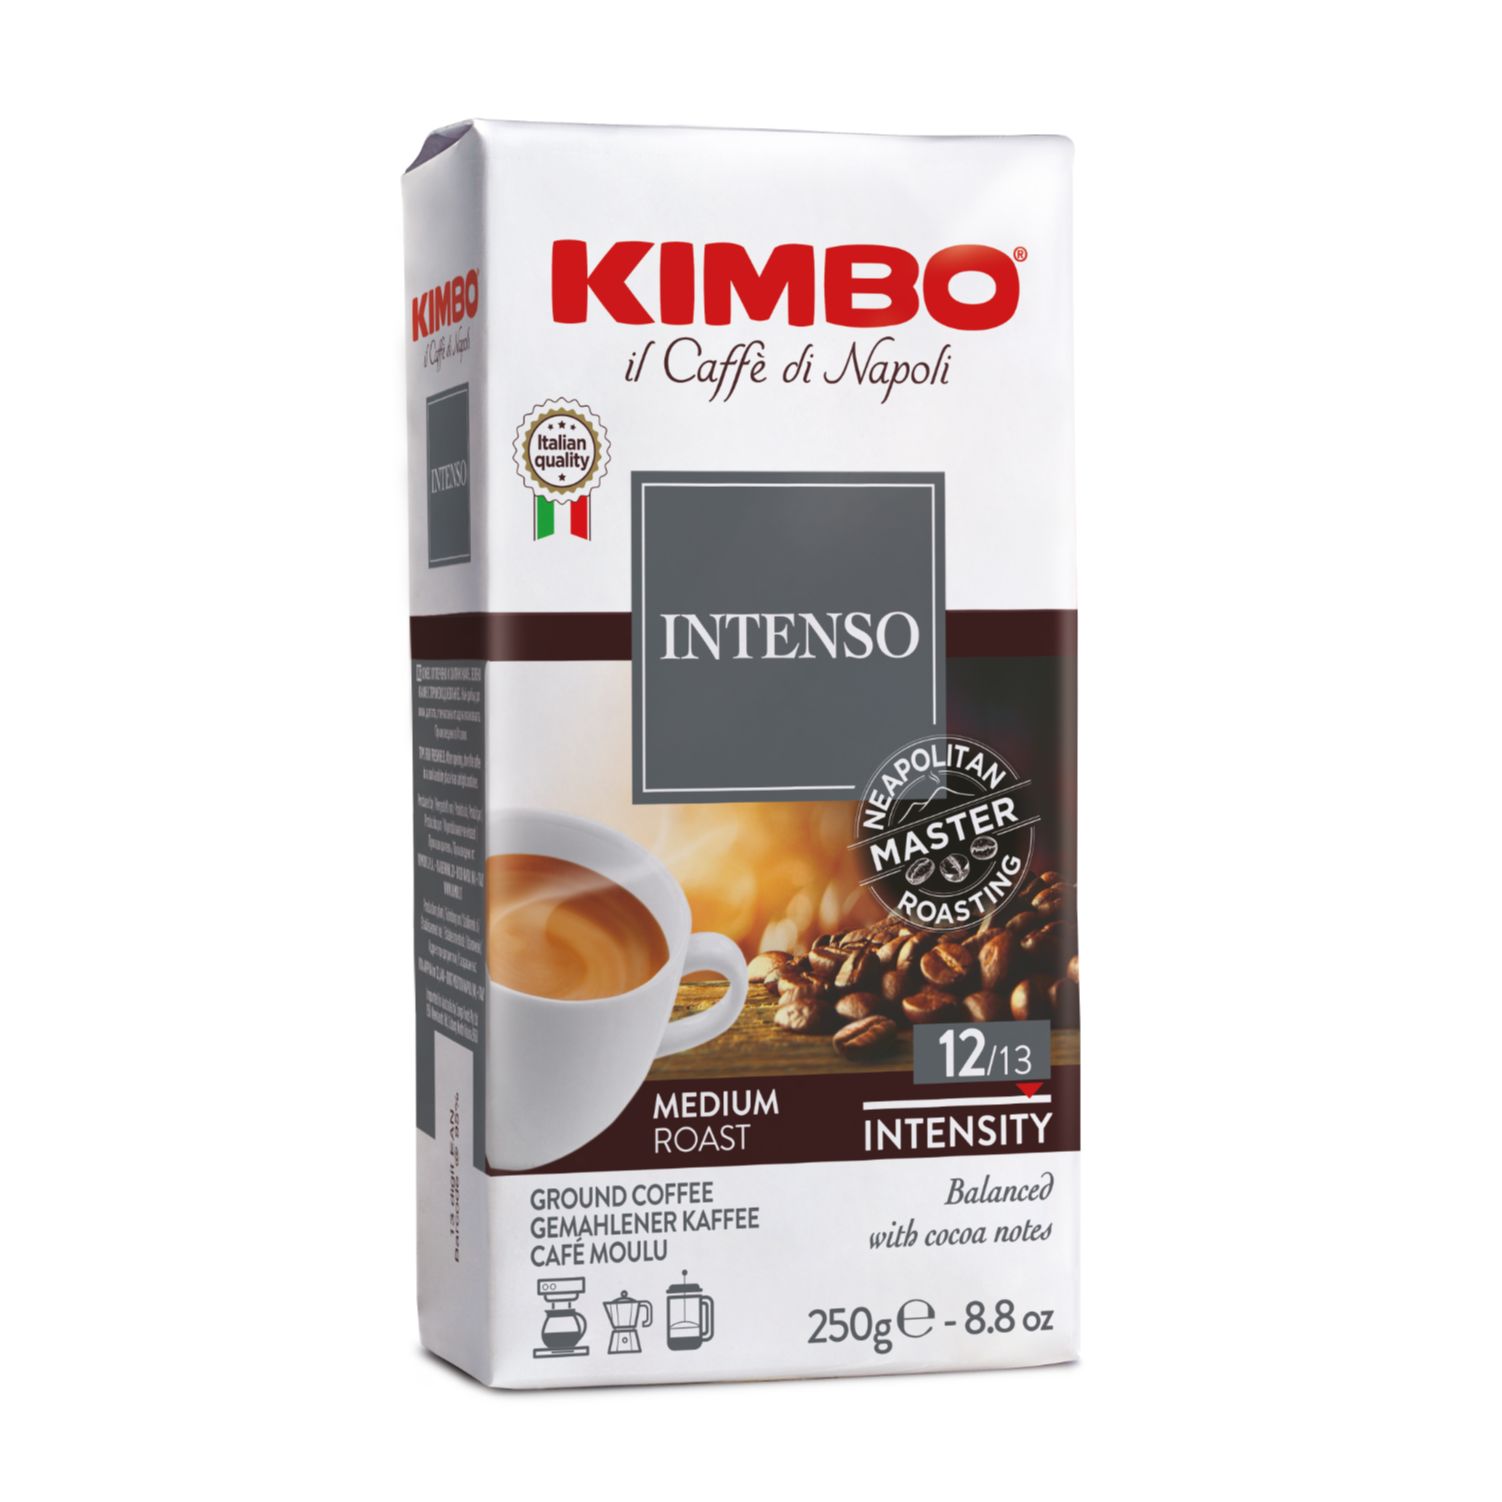 Кимбо, Мляно кафе вакуум Арома интенсо, 250гр